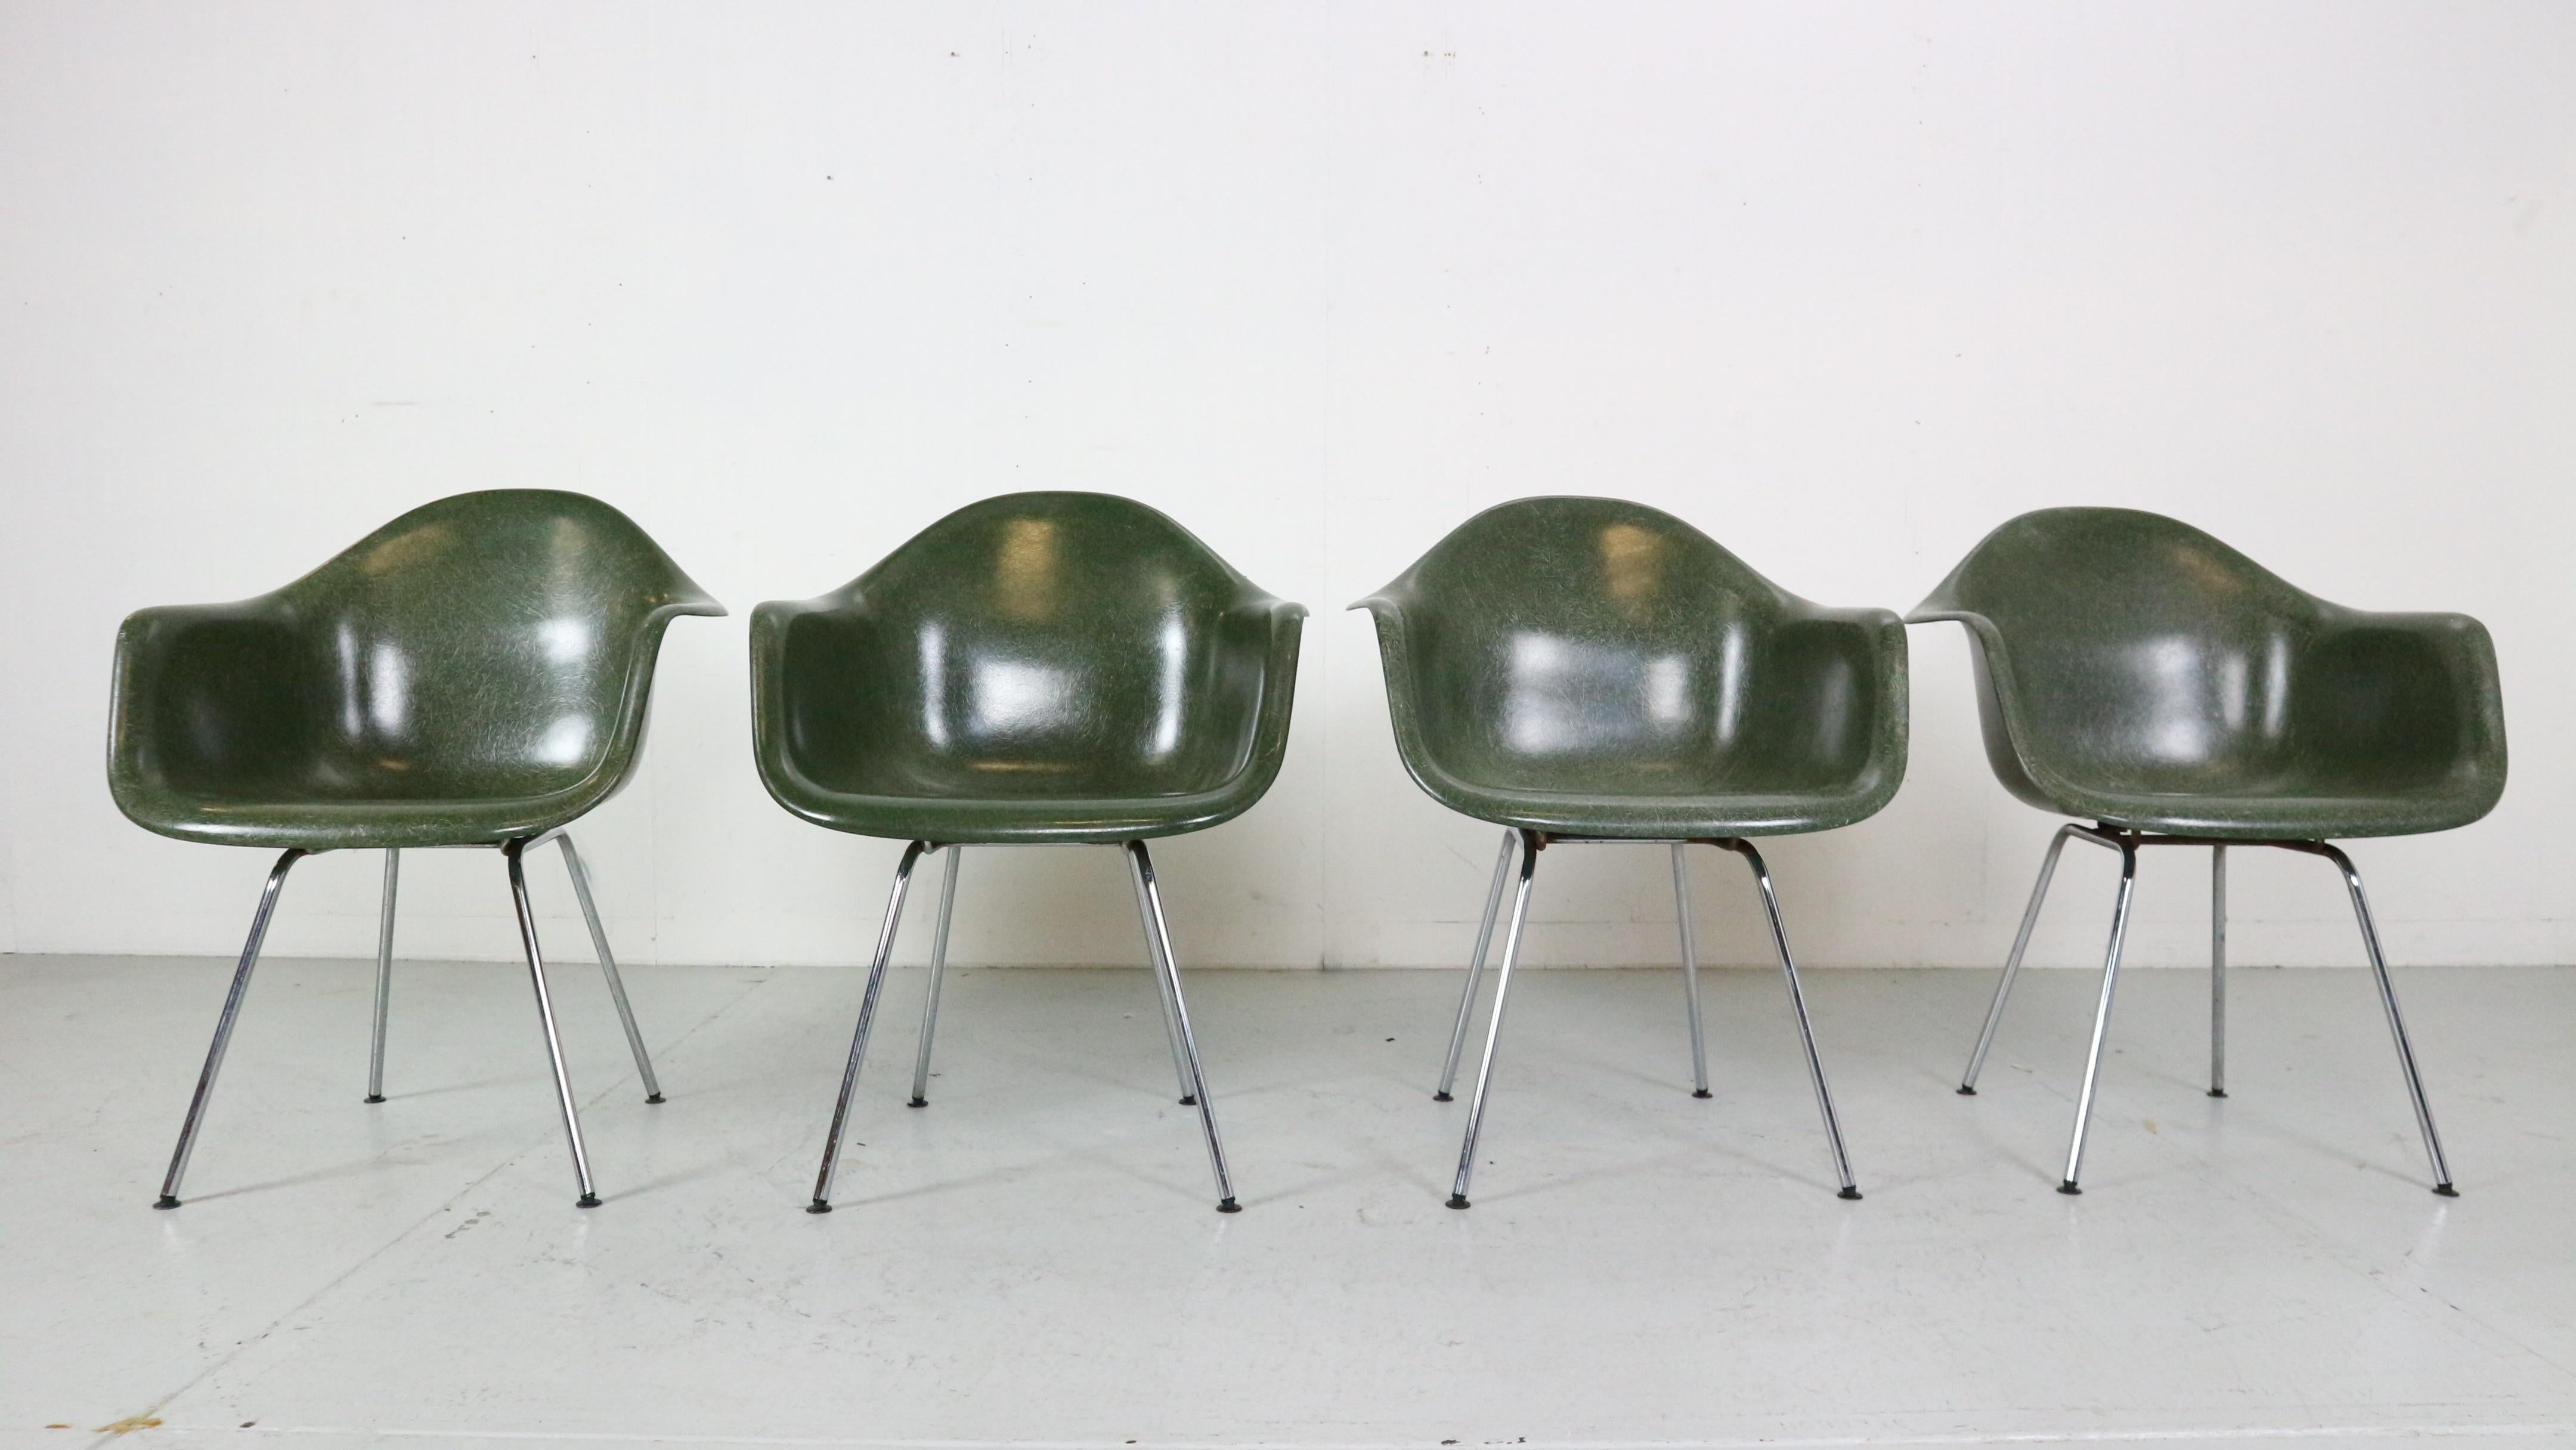 Satz von 4 Esszimmerstühlen, entworfen von Charles und Ray Eames und hergestellt in den Vereinigten Staaten von Herman Miller im Jahr 1955. 

Die 